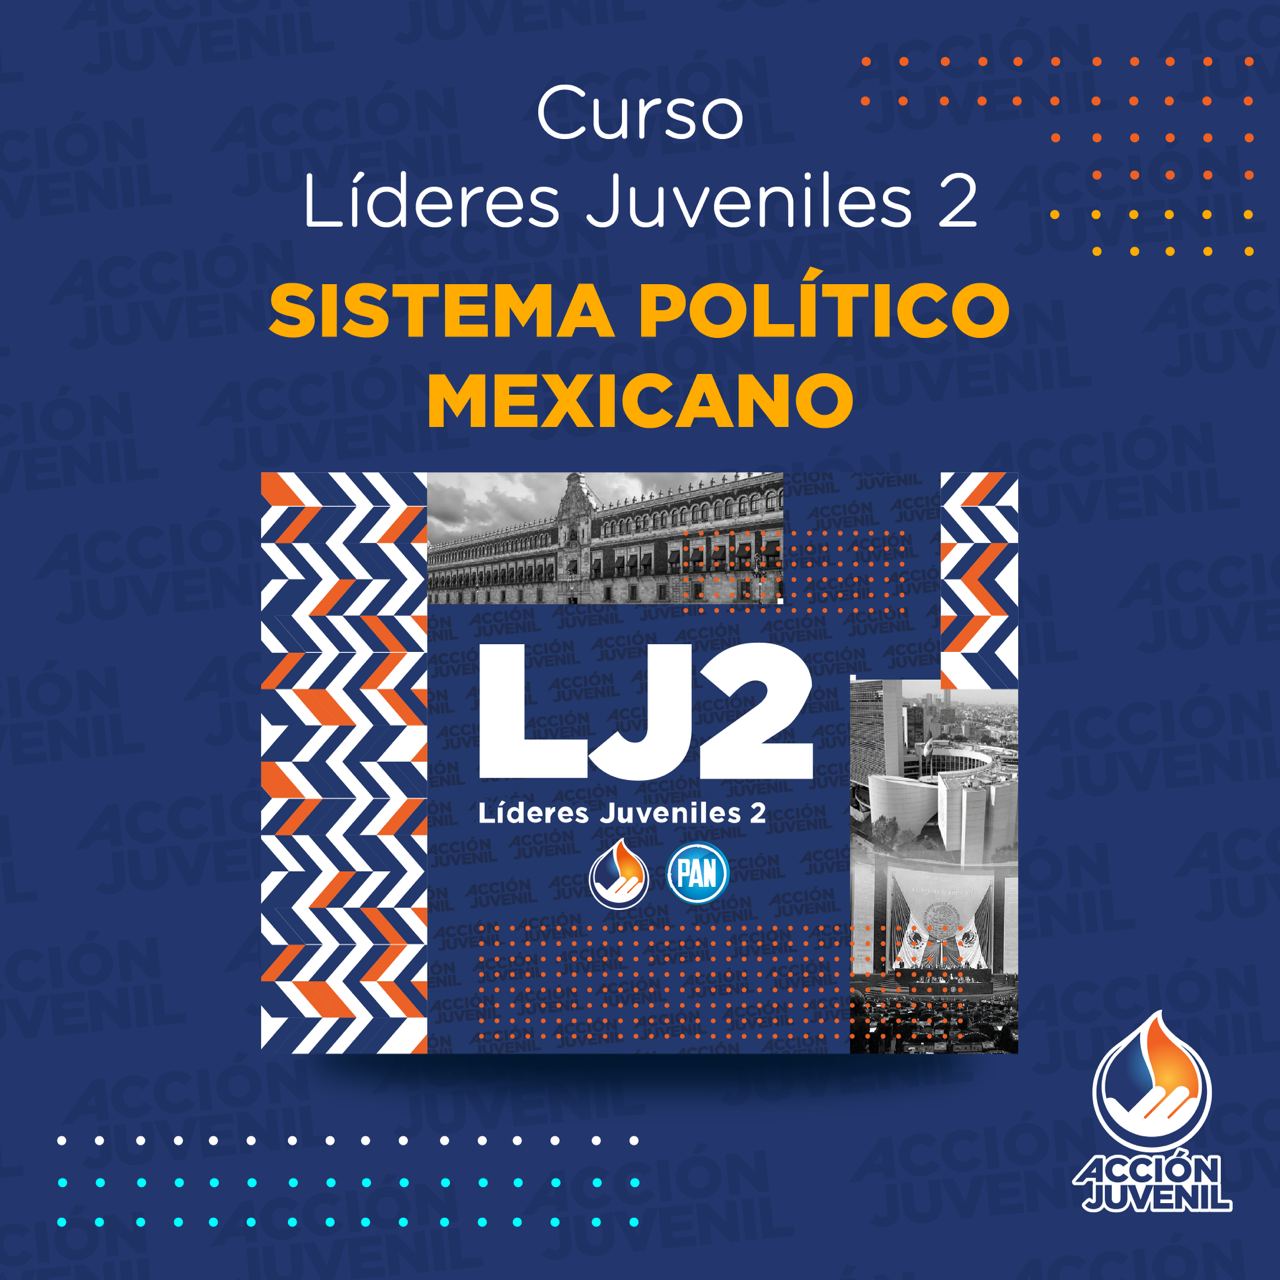 Curso Líderes Juveniles 2 Sistema Político Mexicano  Santiago de Querétaro, QRO 23/01/ 22